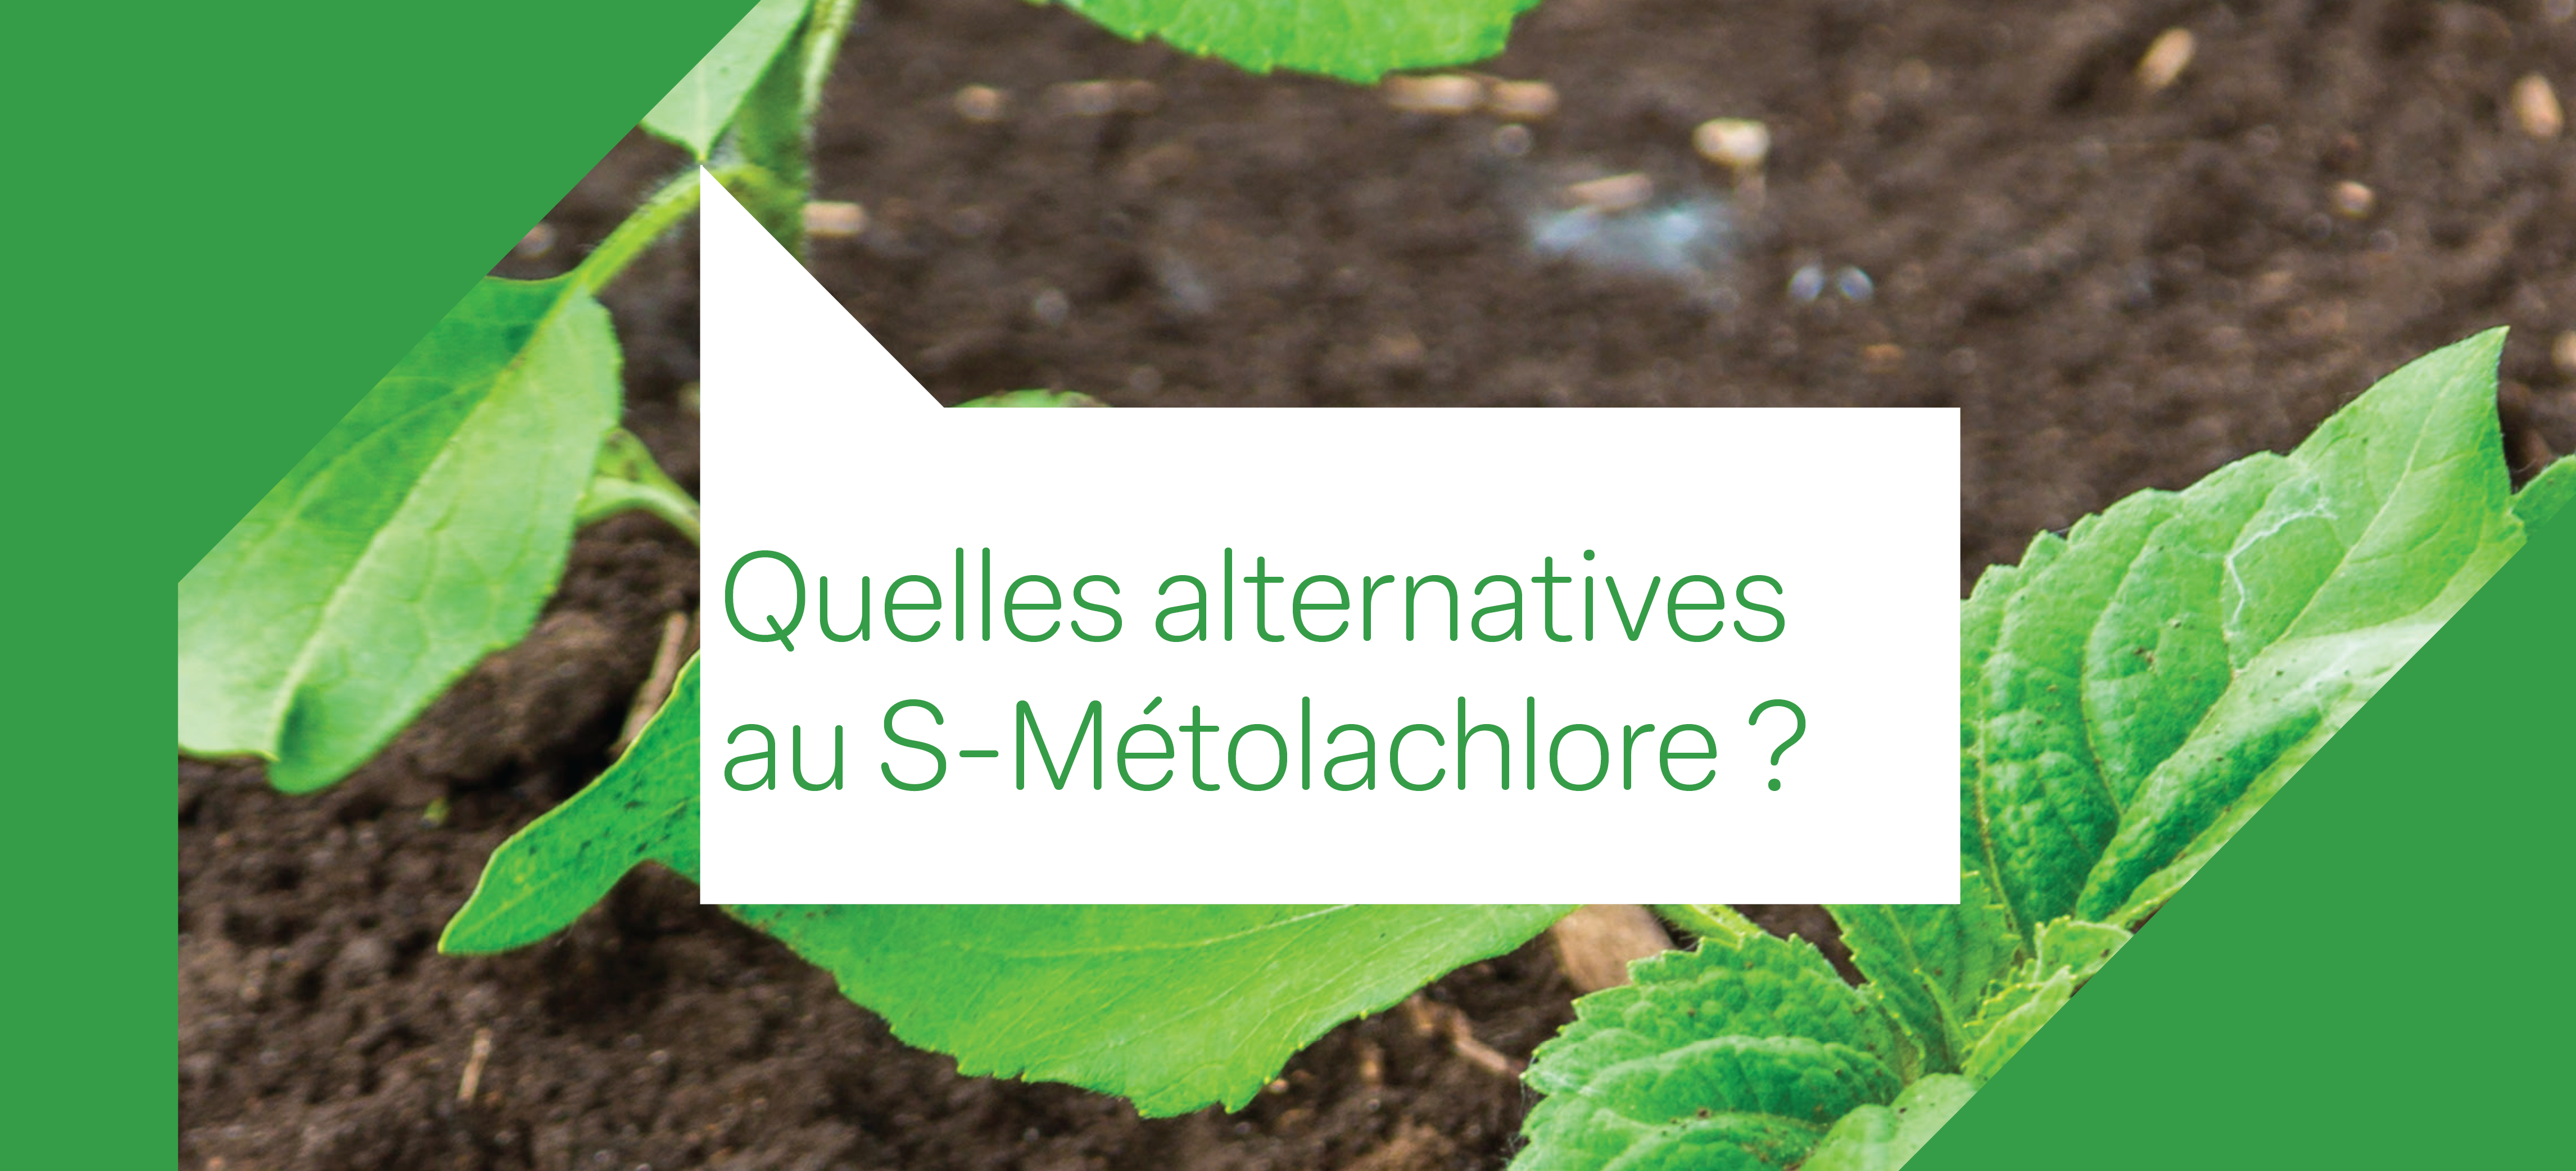 Une photo de jeunes plantes de tournesol avec le texte "quelles alternatives au SMOC ?"